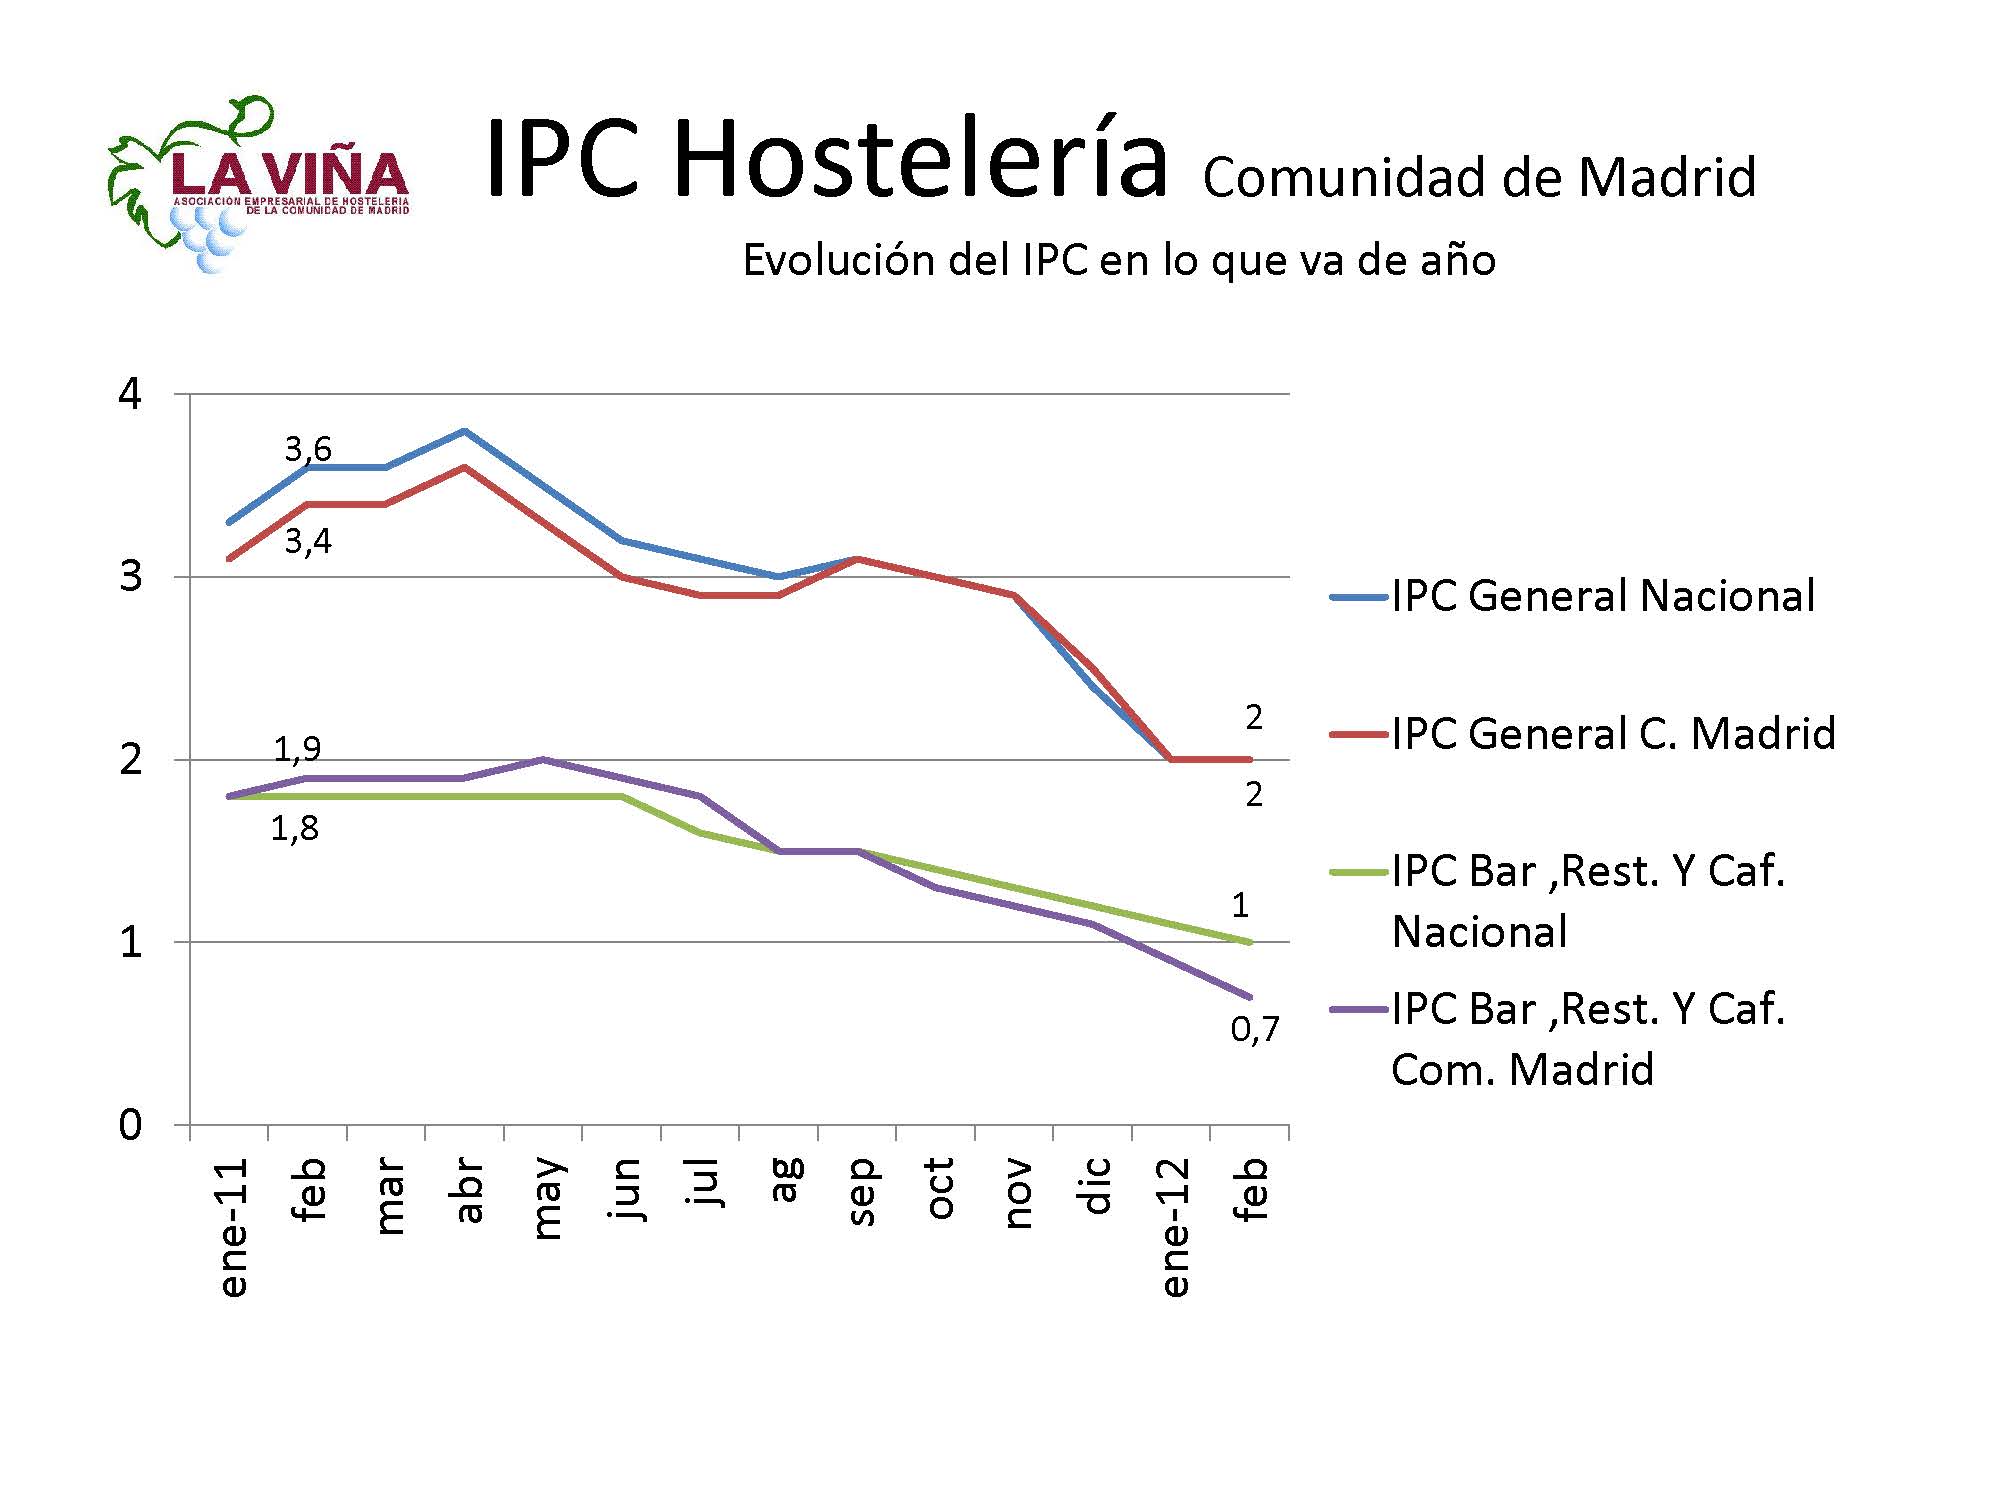 Los precios de restauración siguen por debajo del IPC general en la región - La Viña